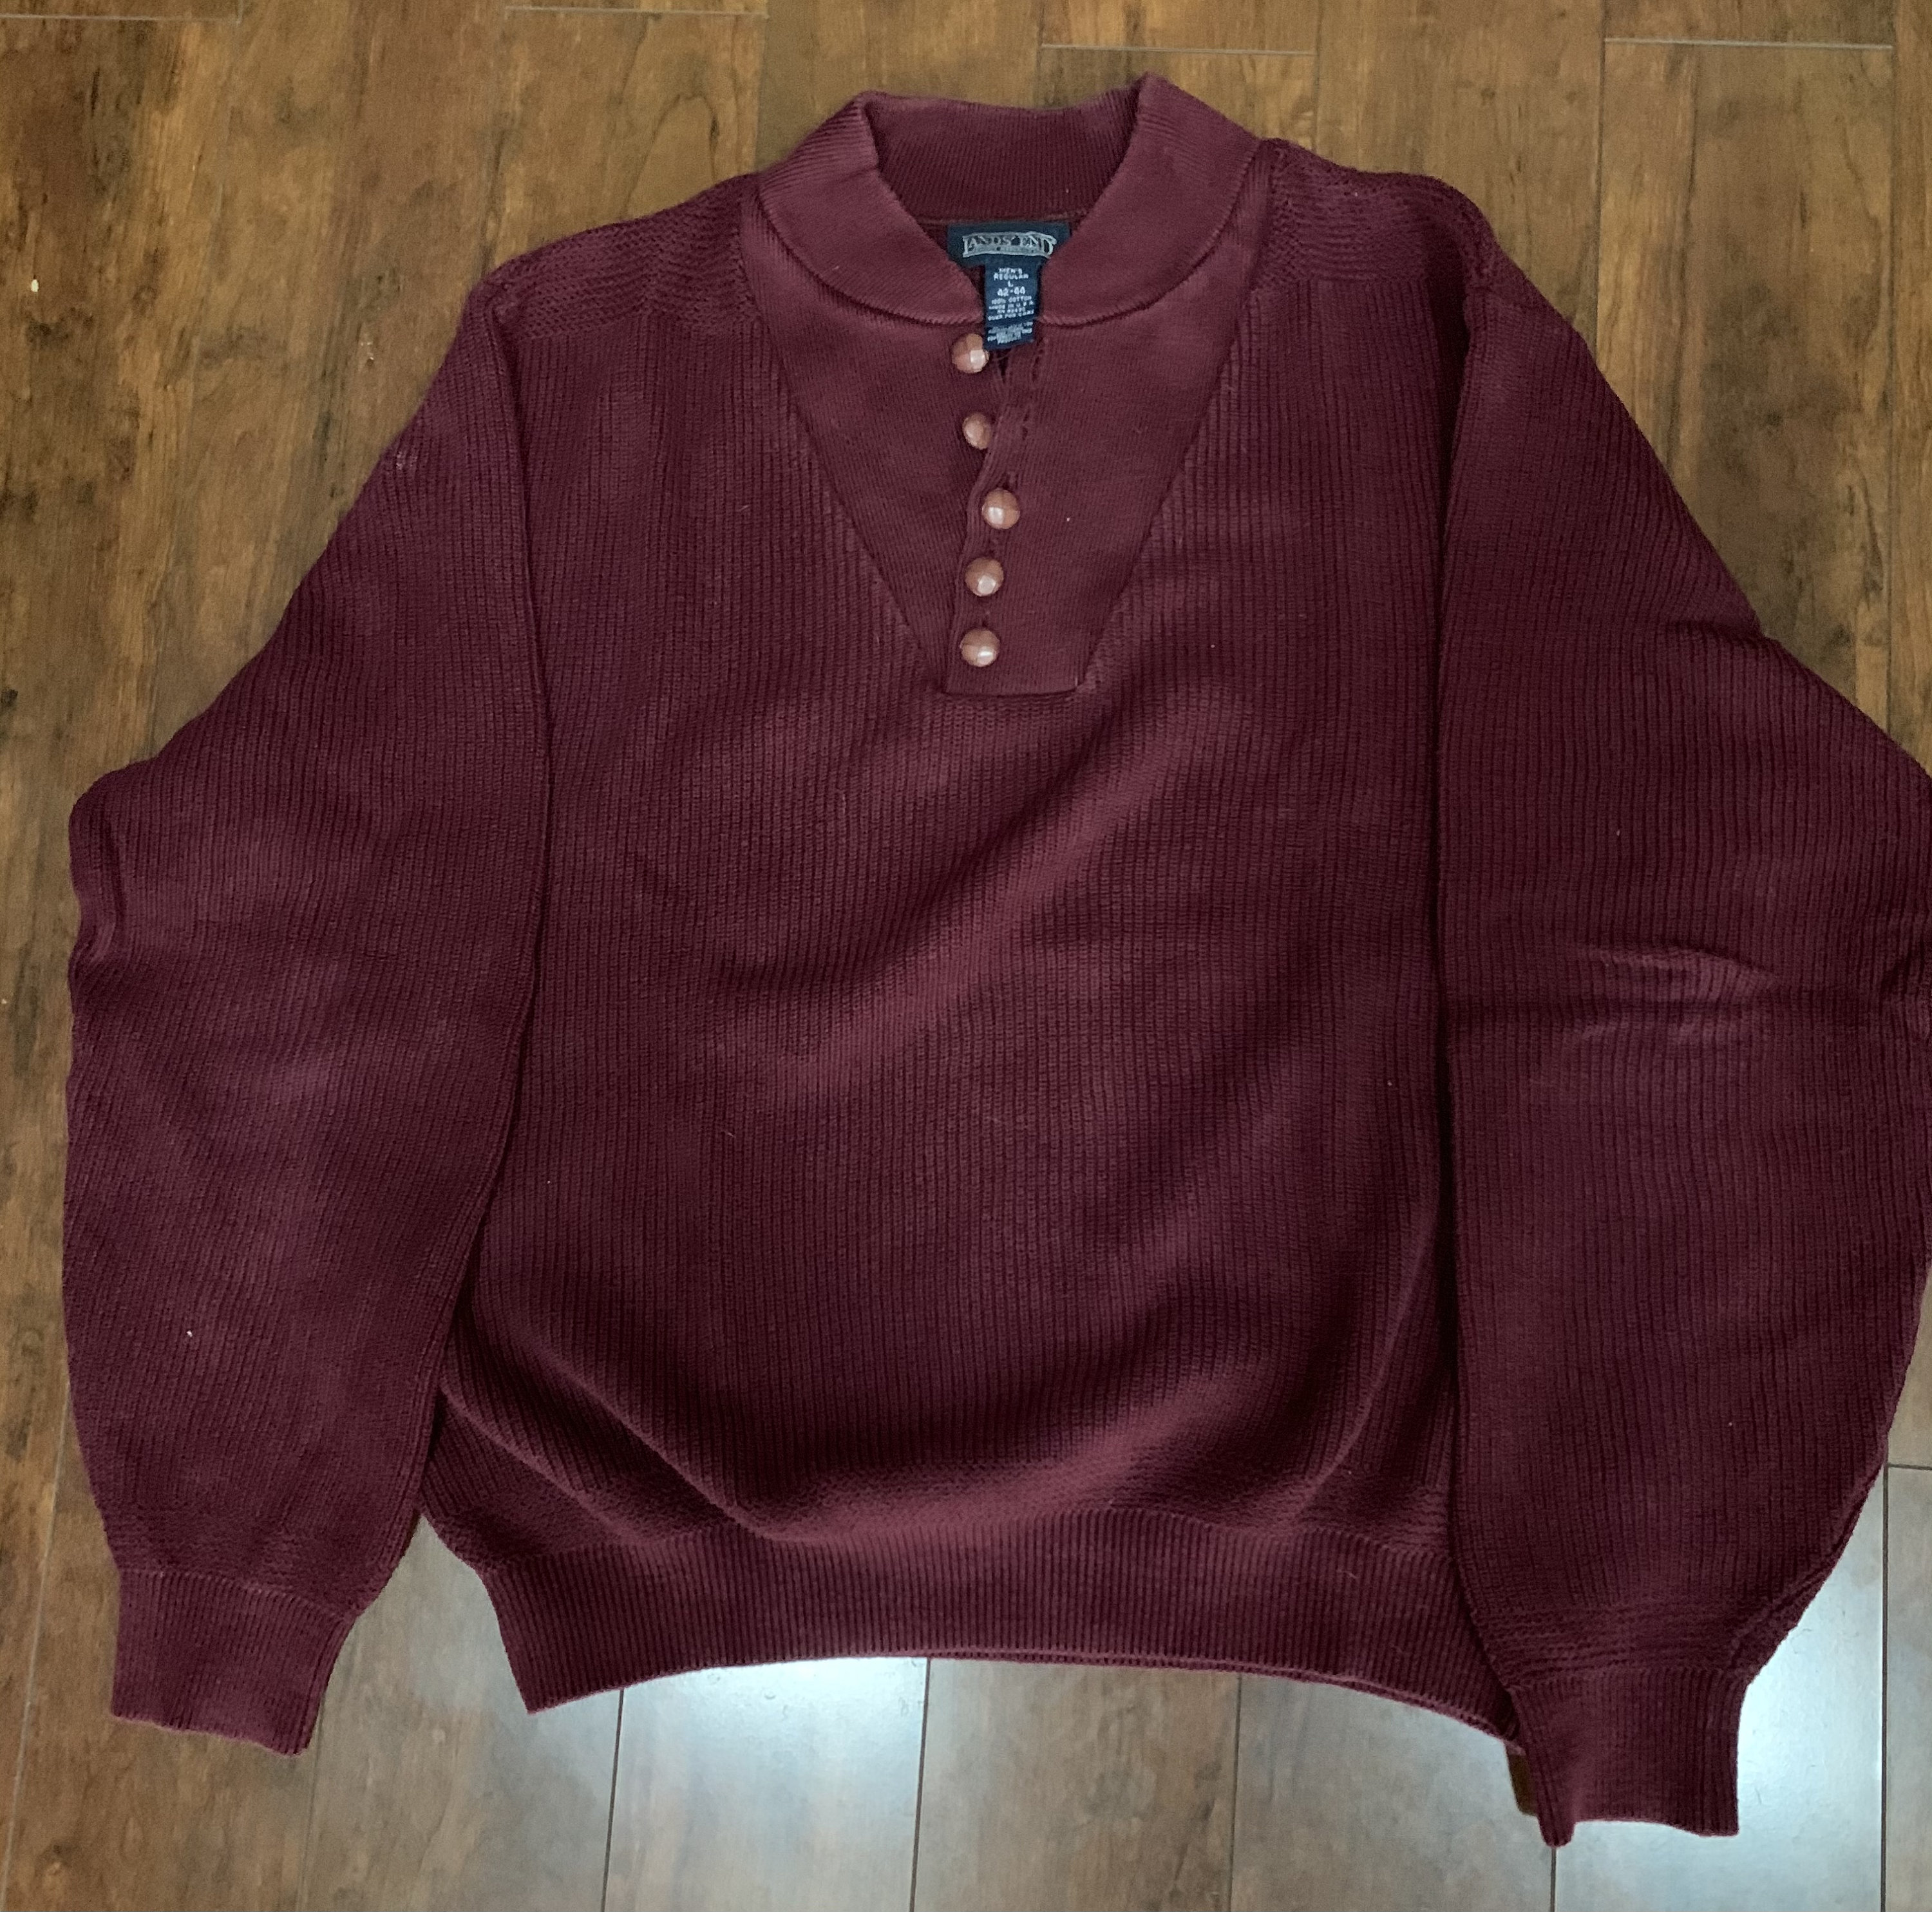 Vintage Lands End Maroon Men’s Sweater